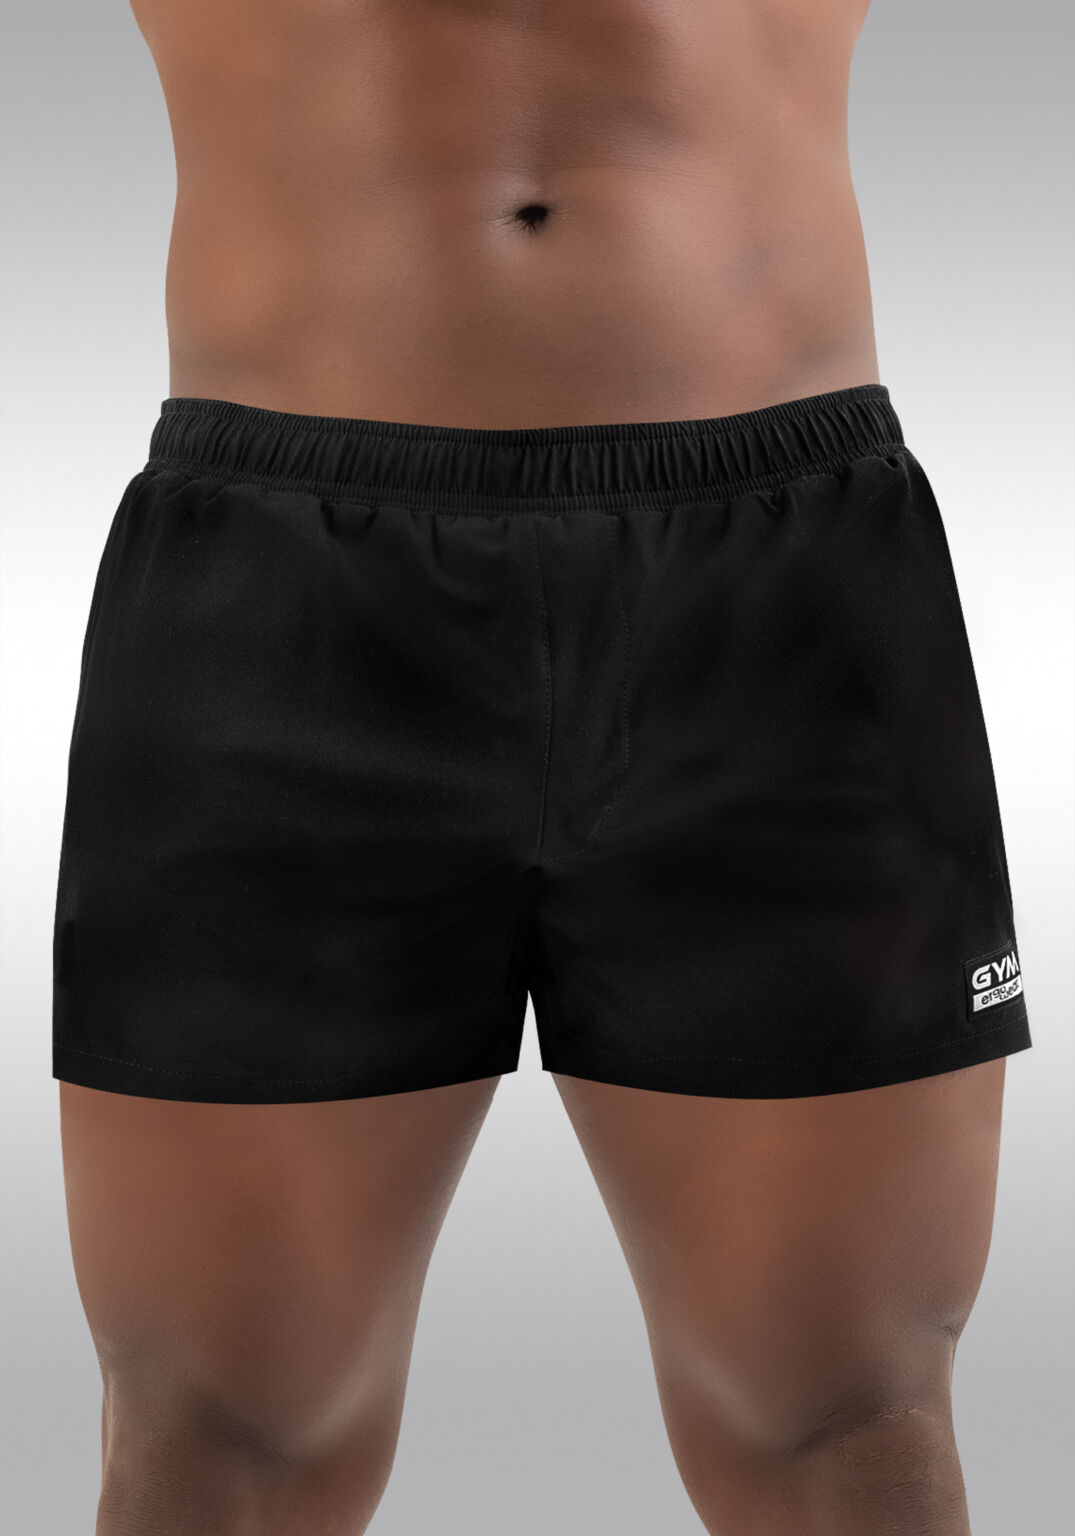 GYM Short Black with Built In Pouch Underwear | Ergowear